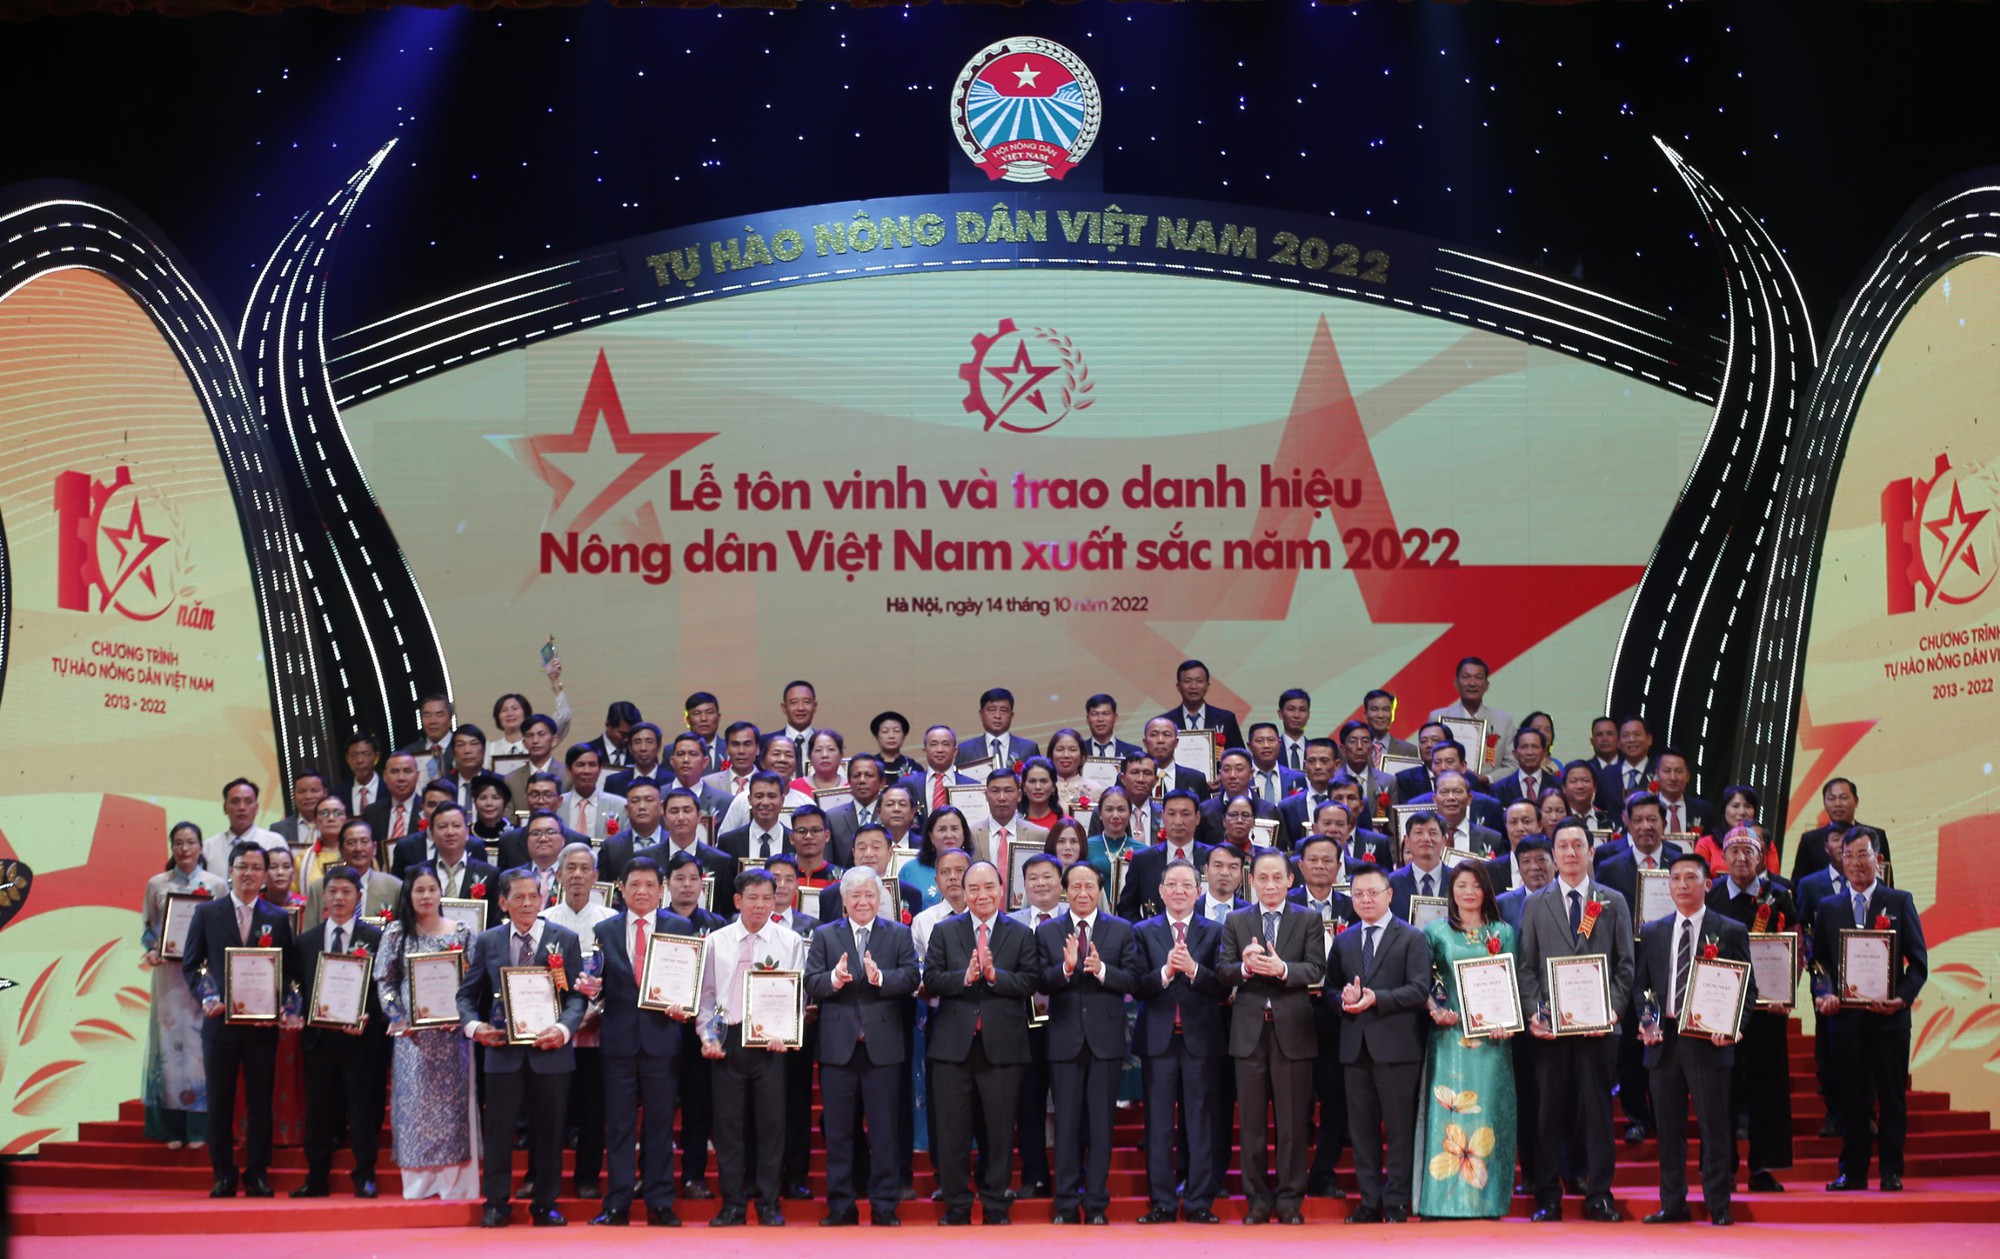 100 Nông dân Việt Nam xuất sắc năm 2022 truyền cảm hứng lôi cuốn nông dân cả nước cùng làm giàu - Ảnh 1.